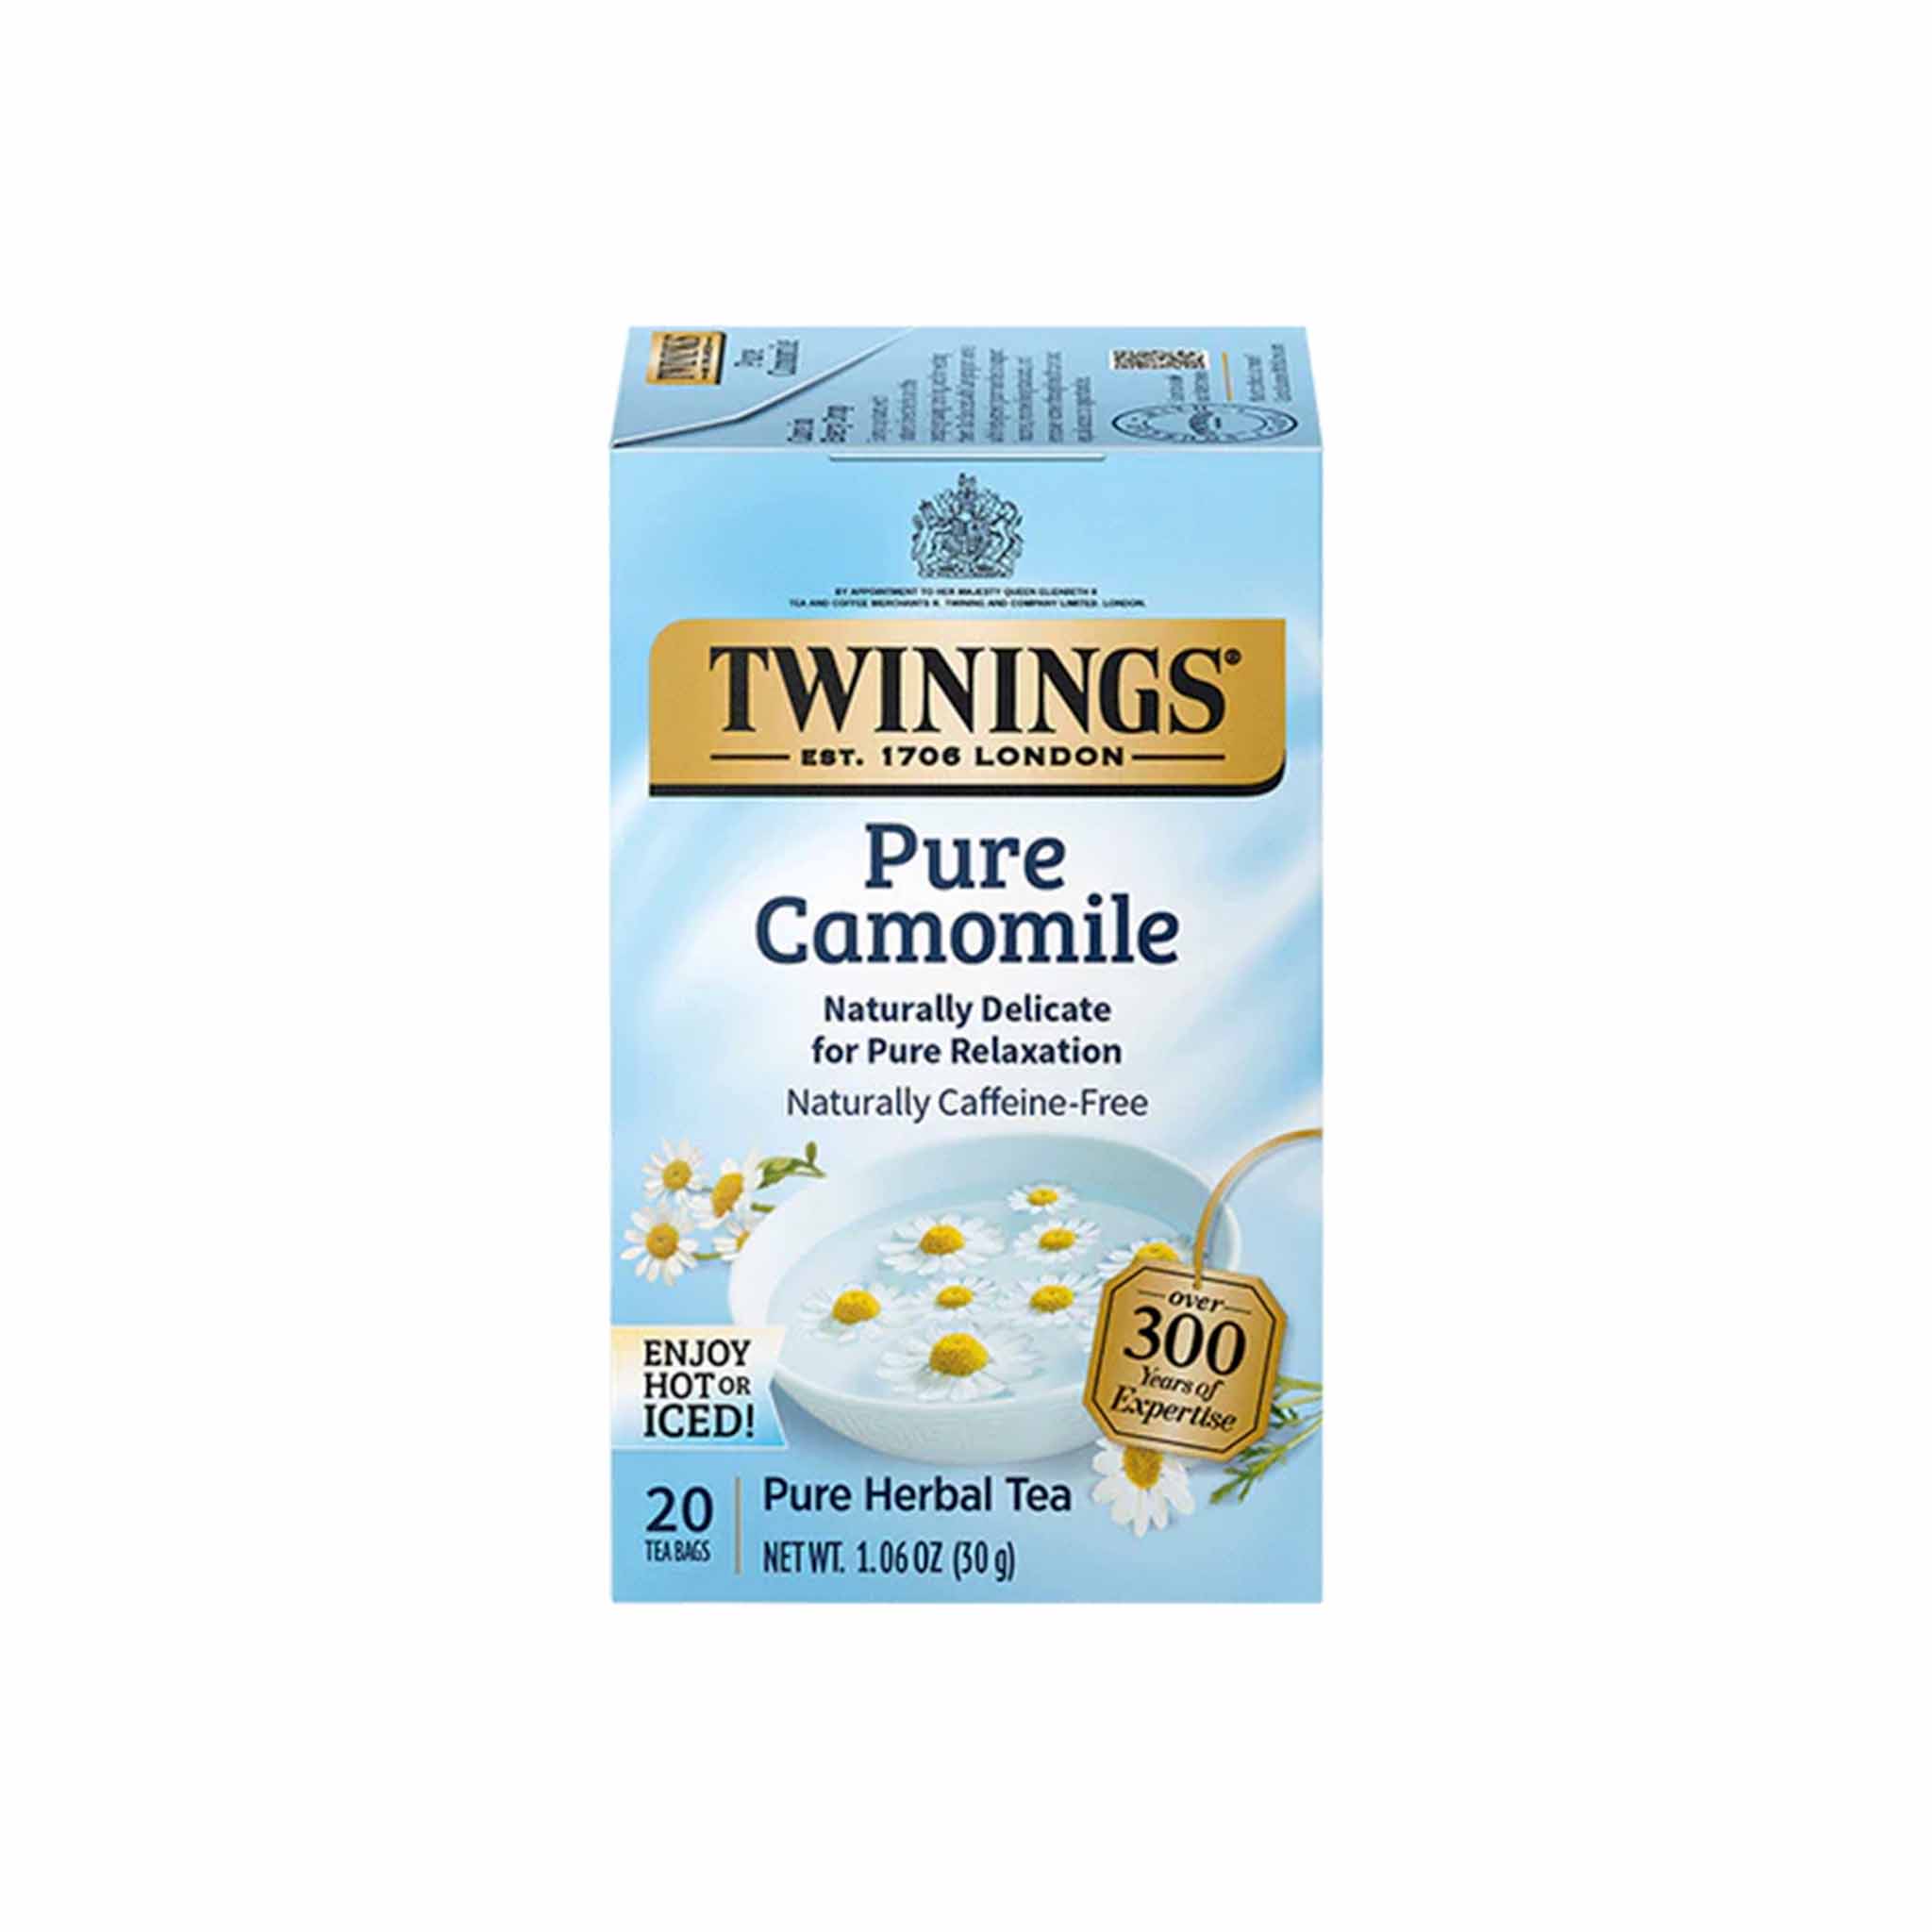 TWININGS PURE CAMOMILE TEA 1.06oz